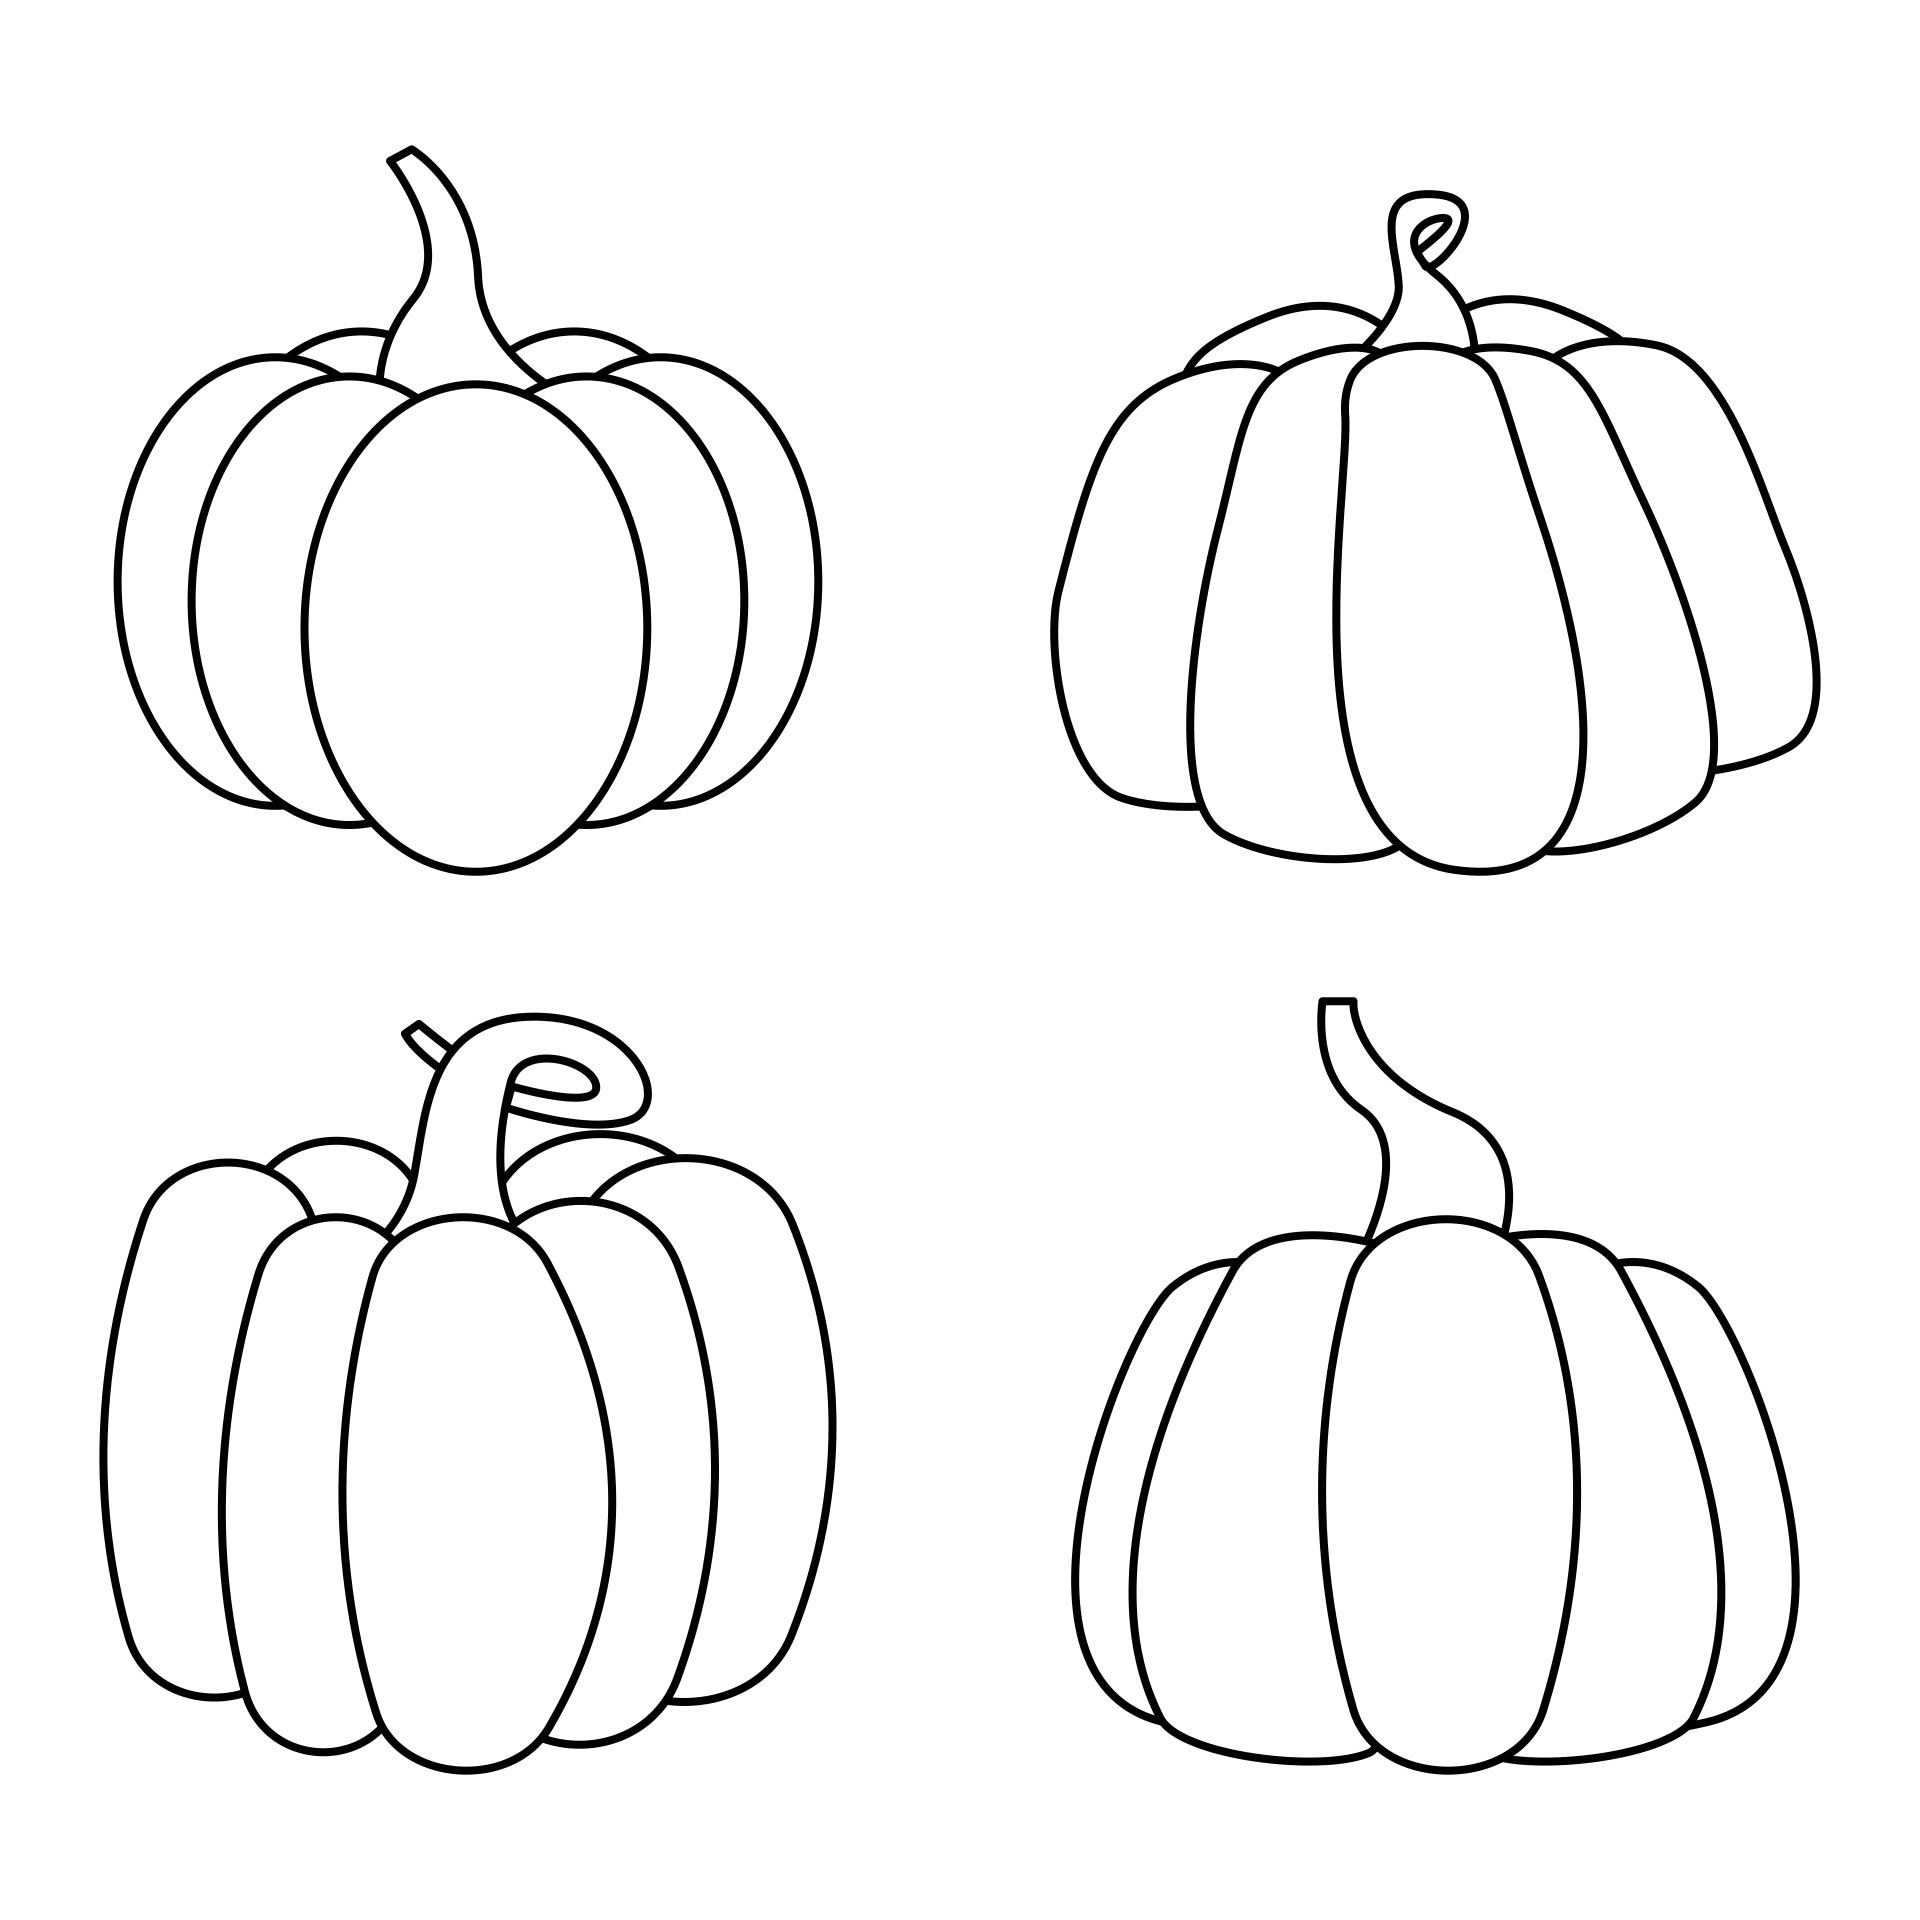 4 Best Free Printable Pumpkin Coloring Pages - printablee.com